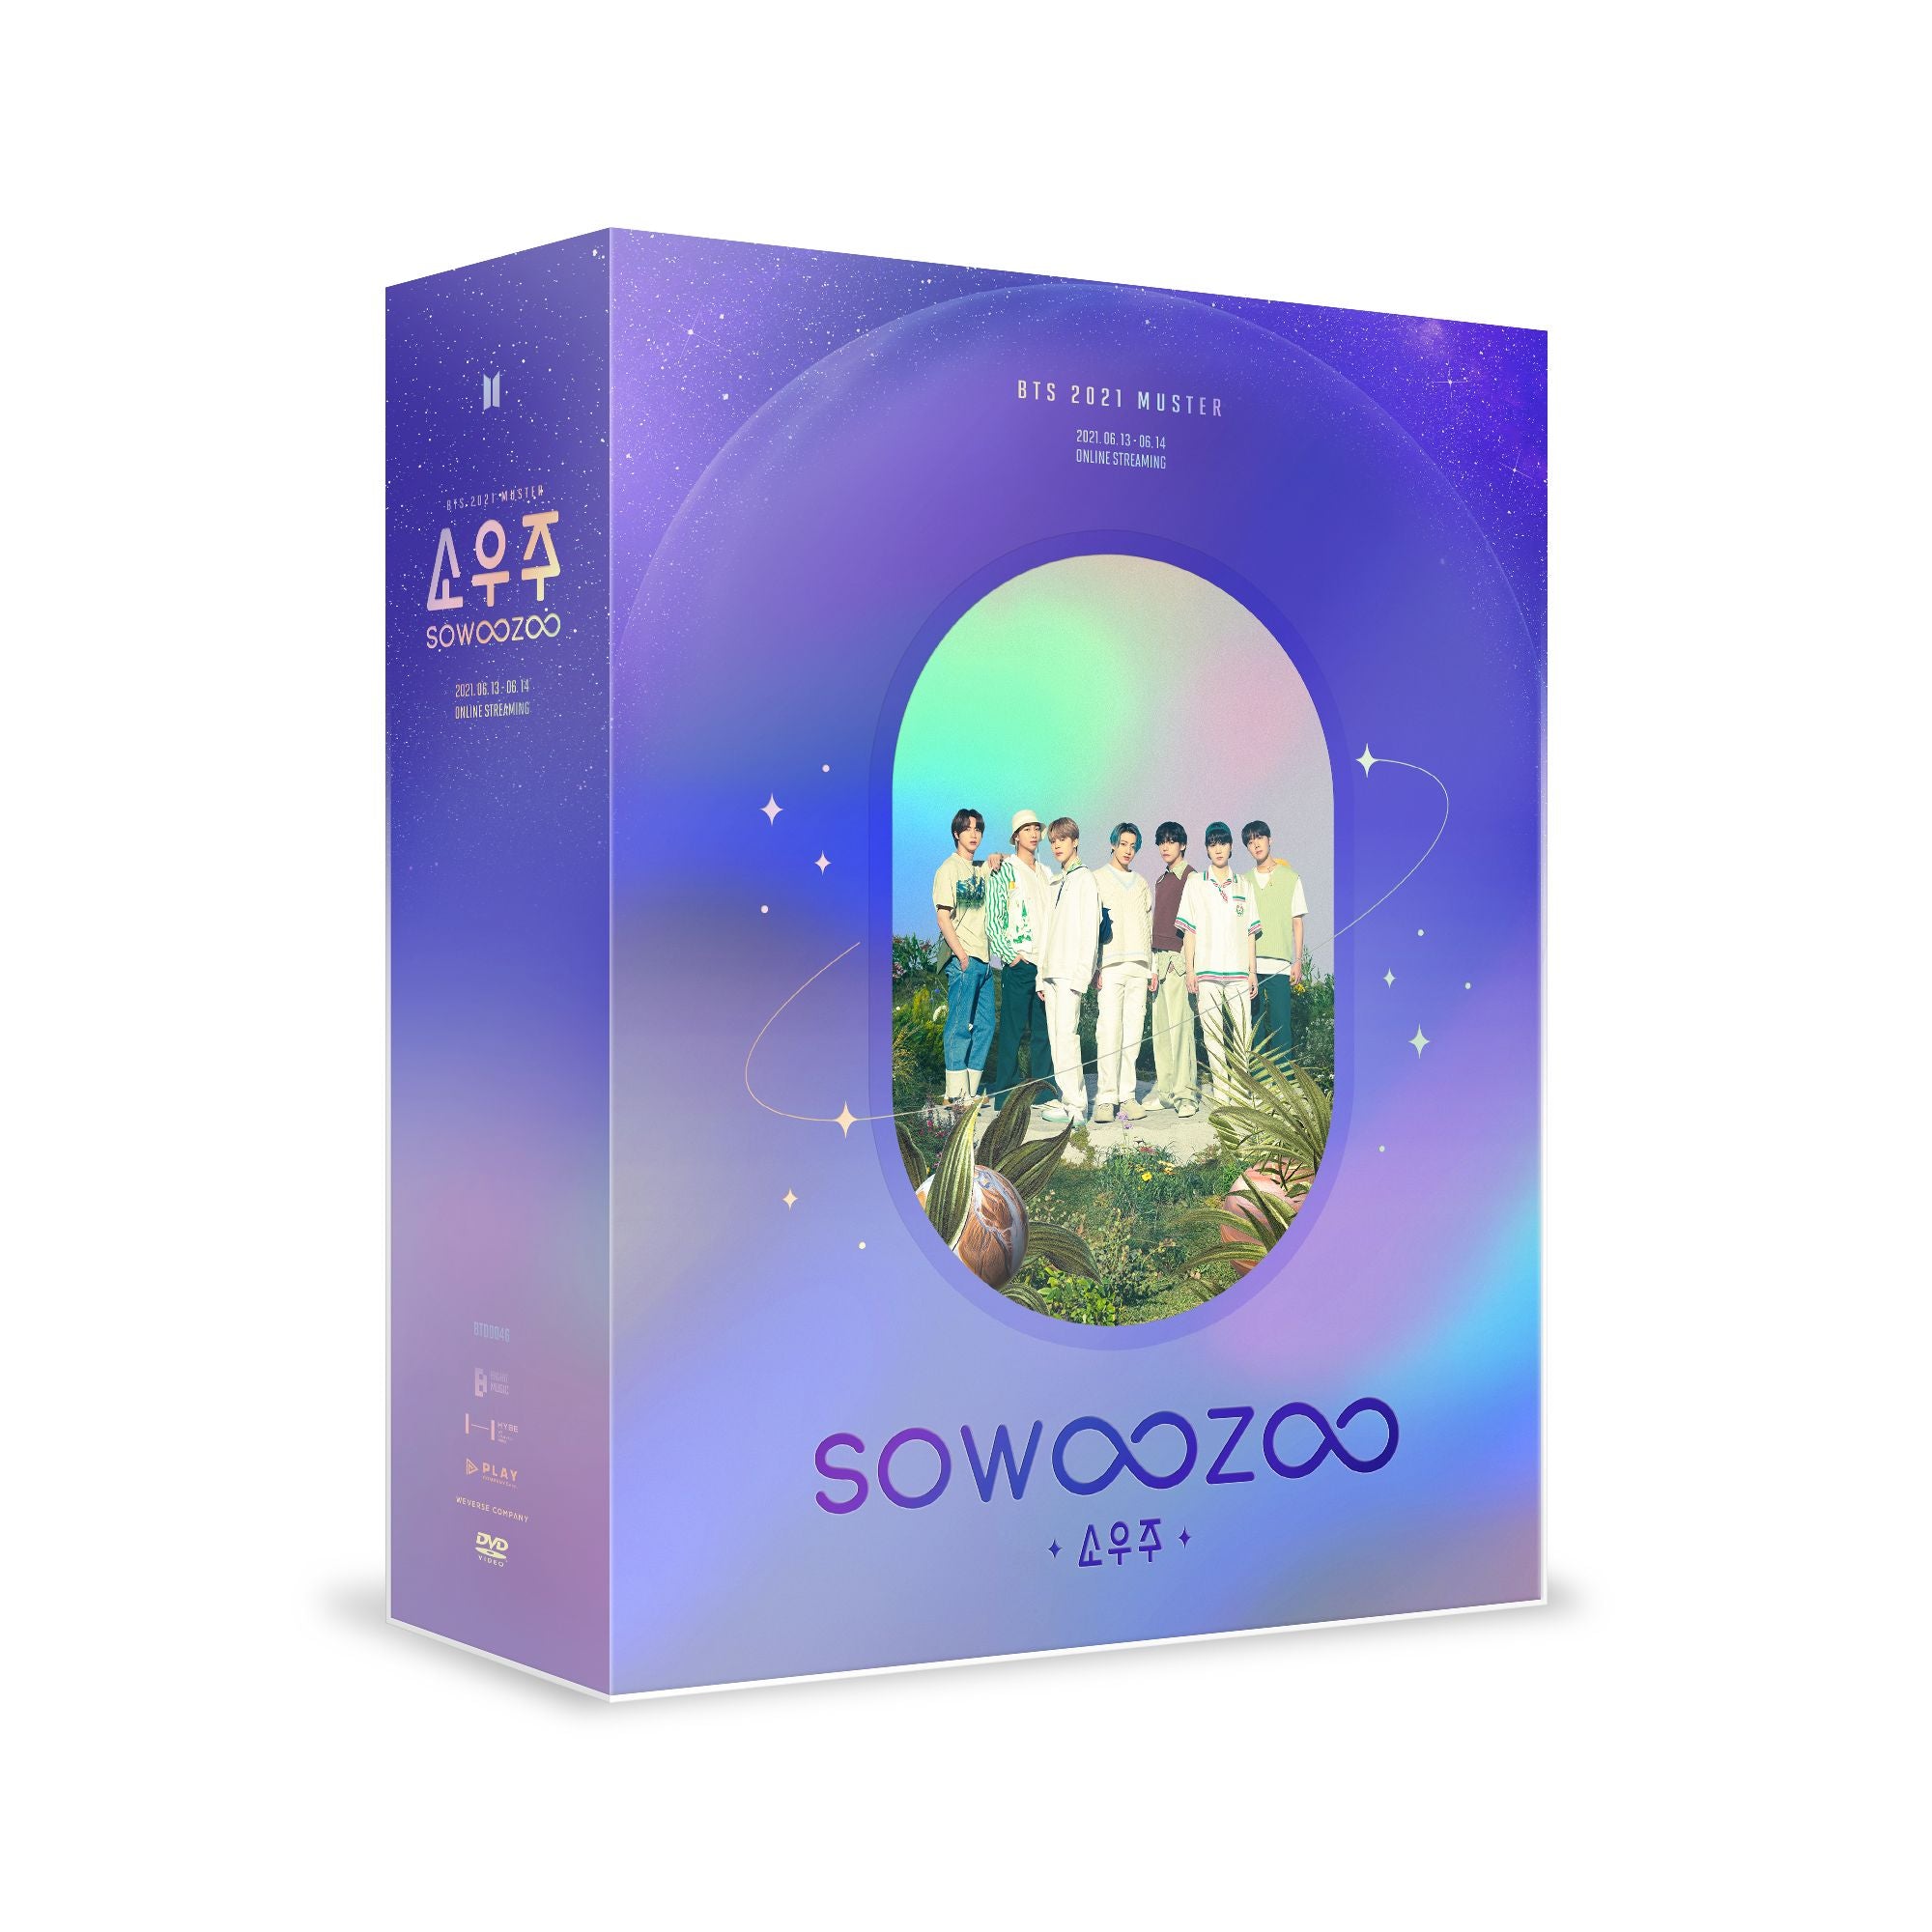 BTS - 2021 MUSTER SOWOOZOO DVD